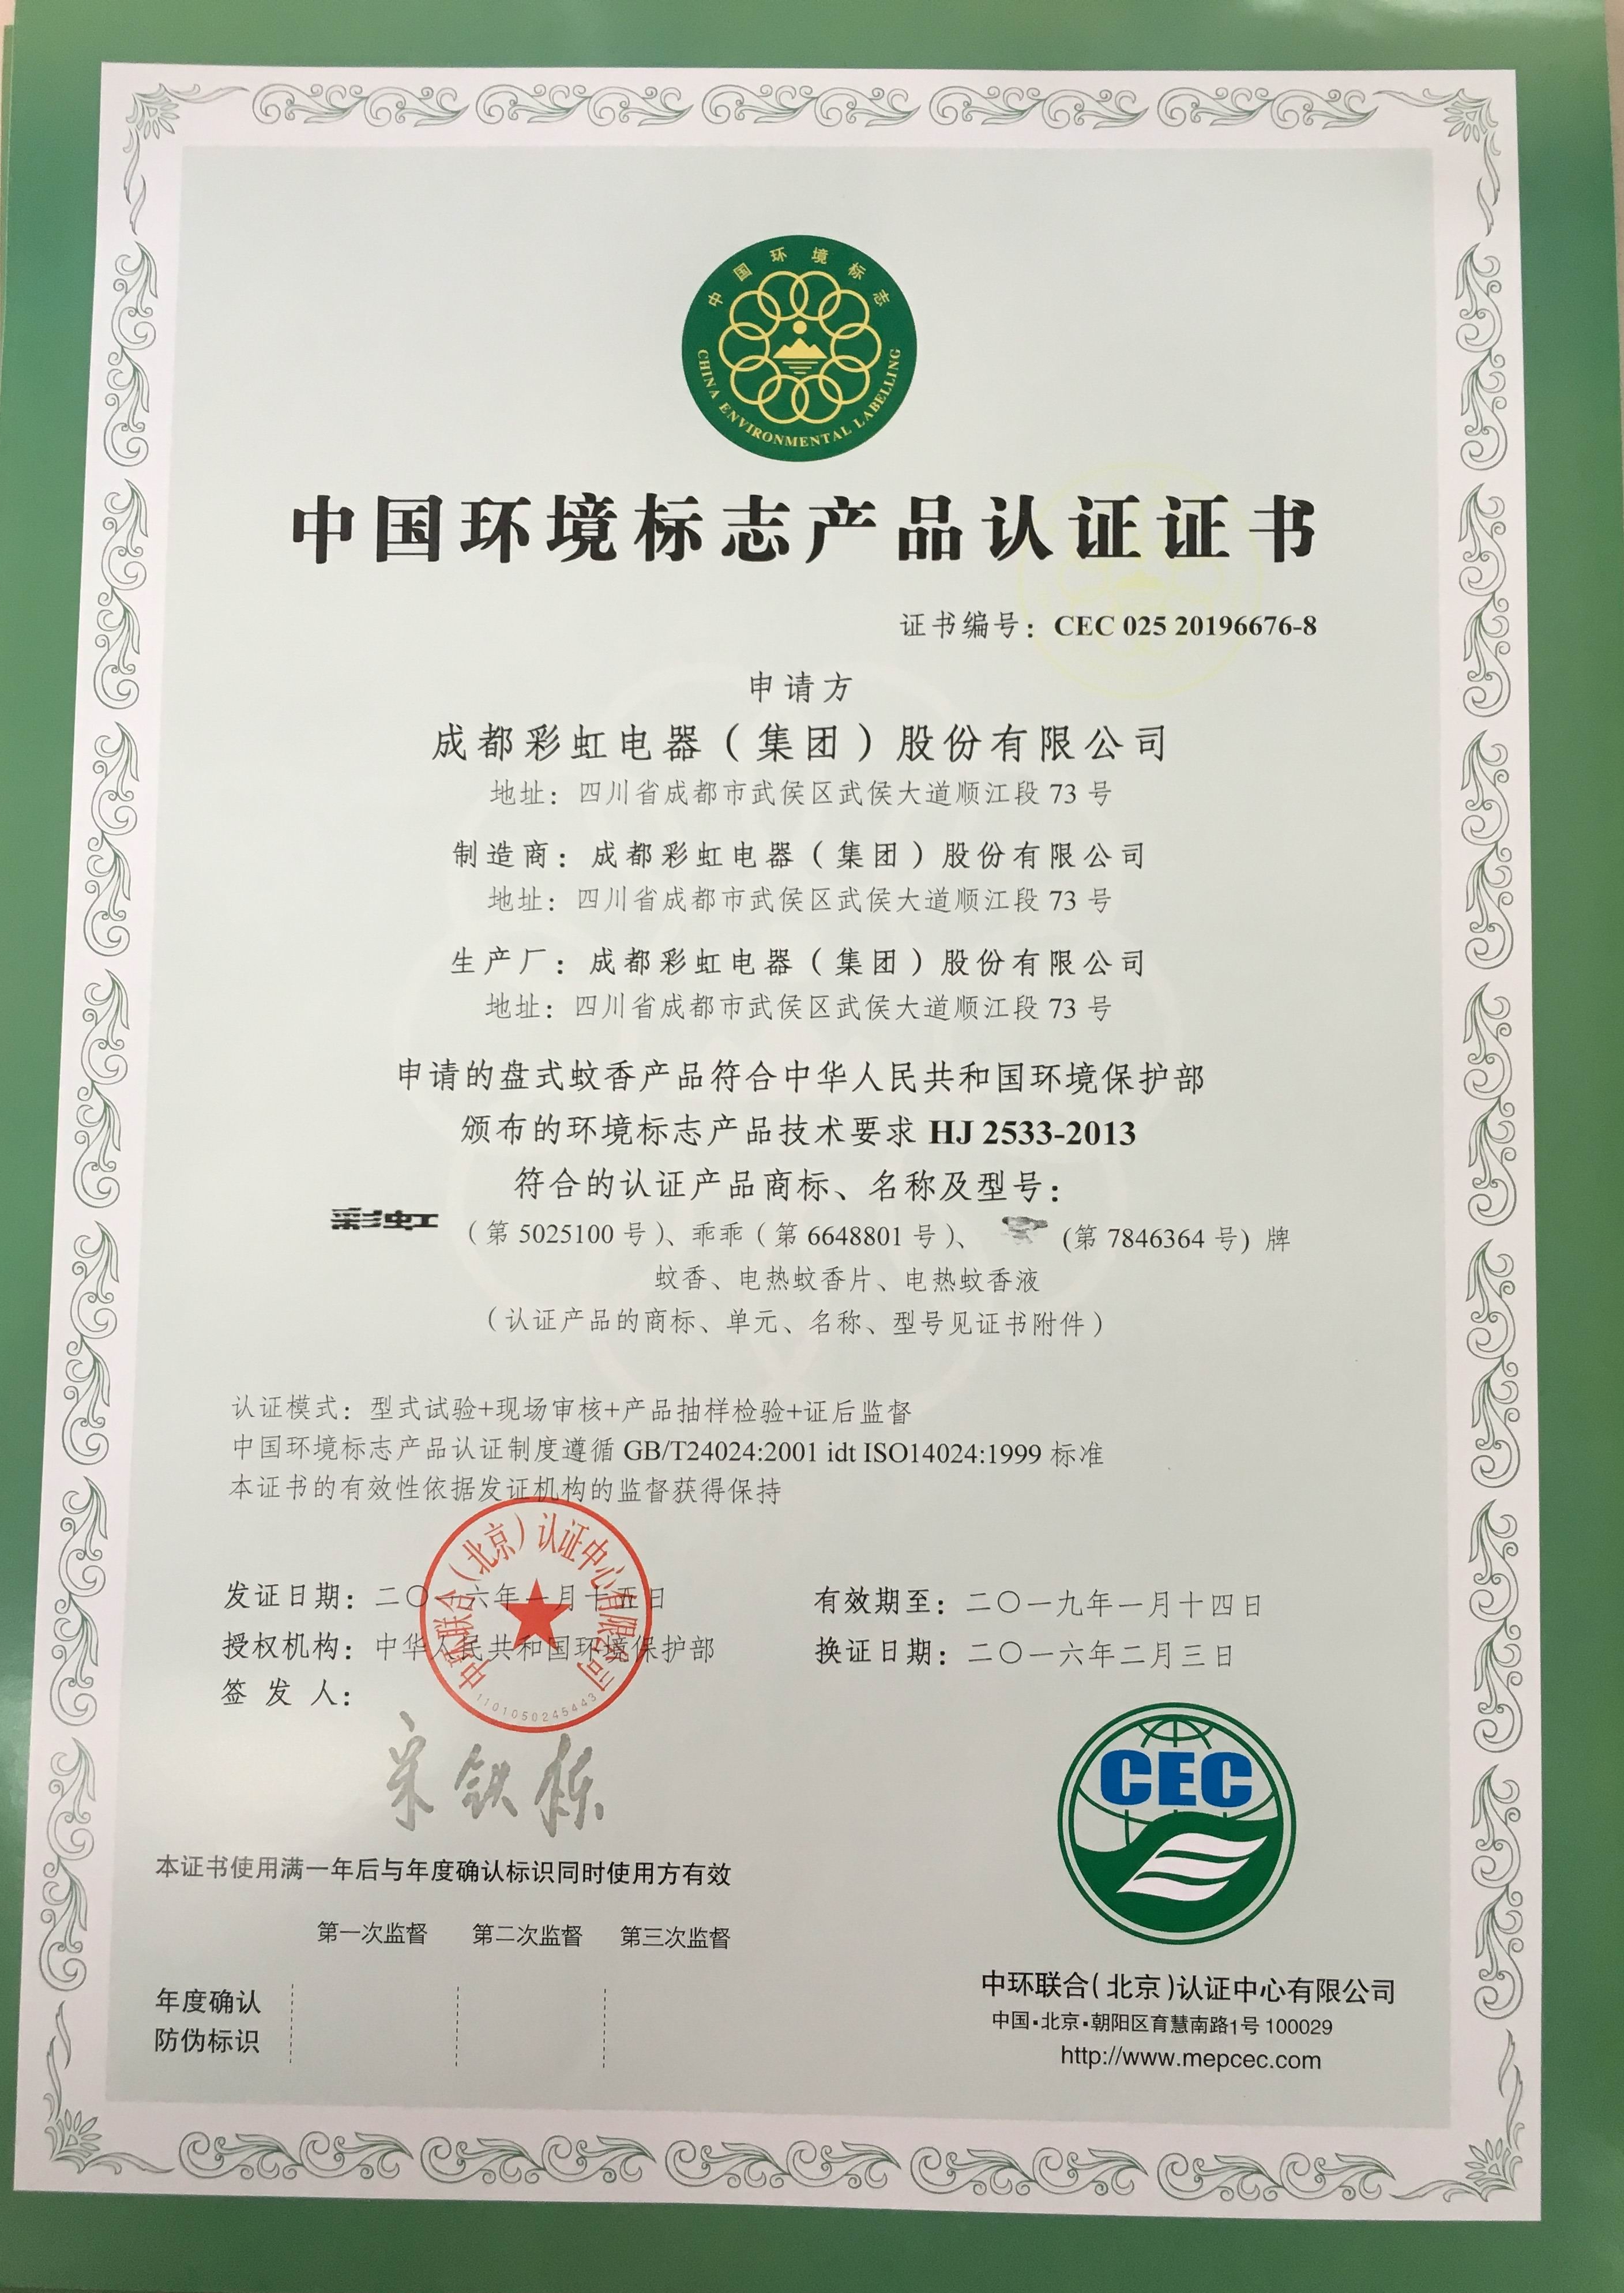 成都彩虹集团盘式蚊香产品荣获中国环境标志产品认证证书